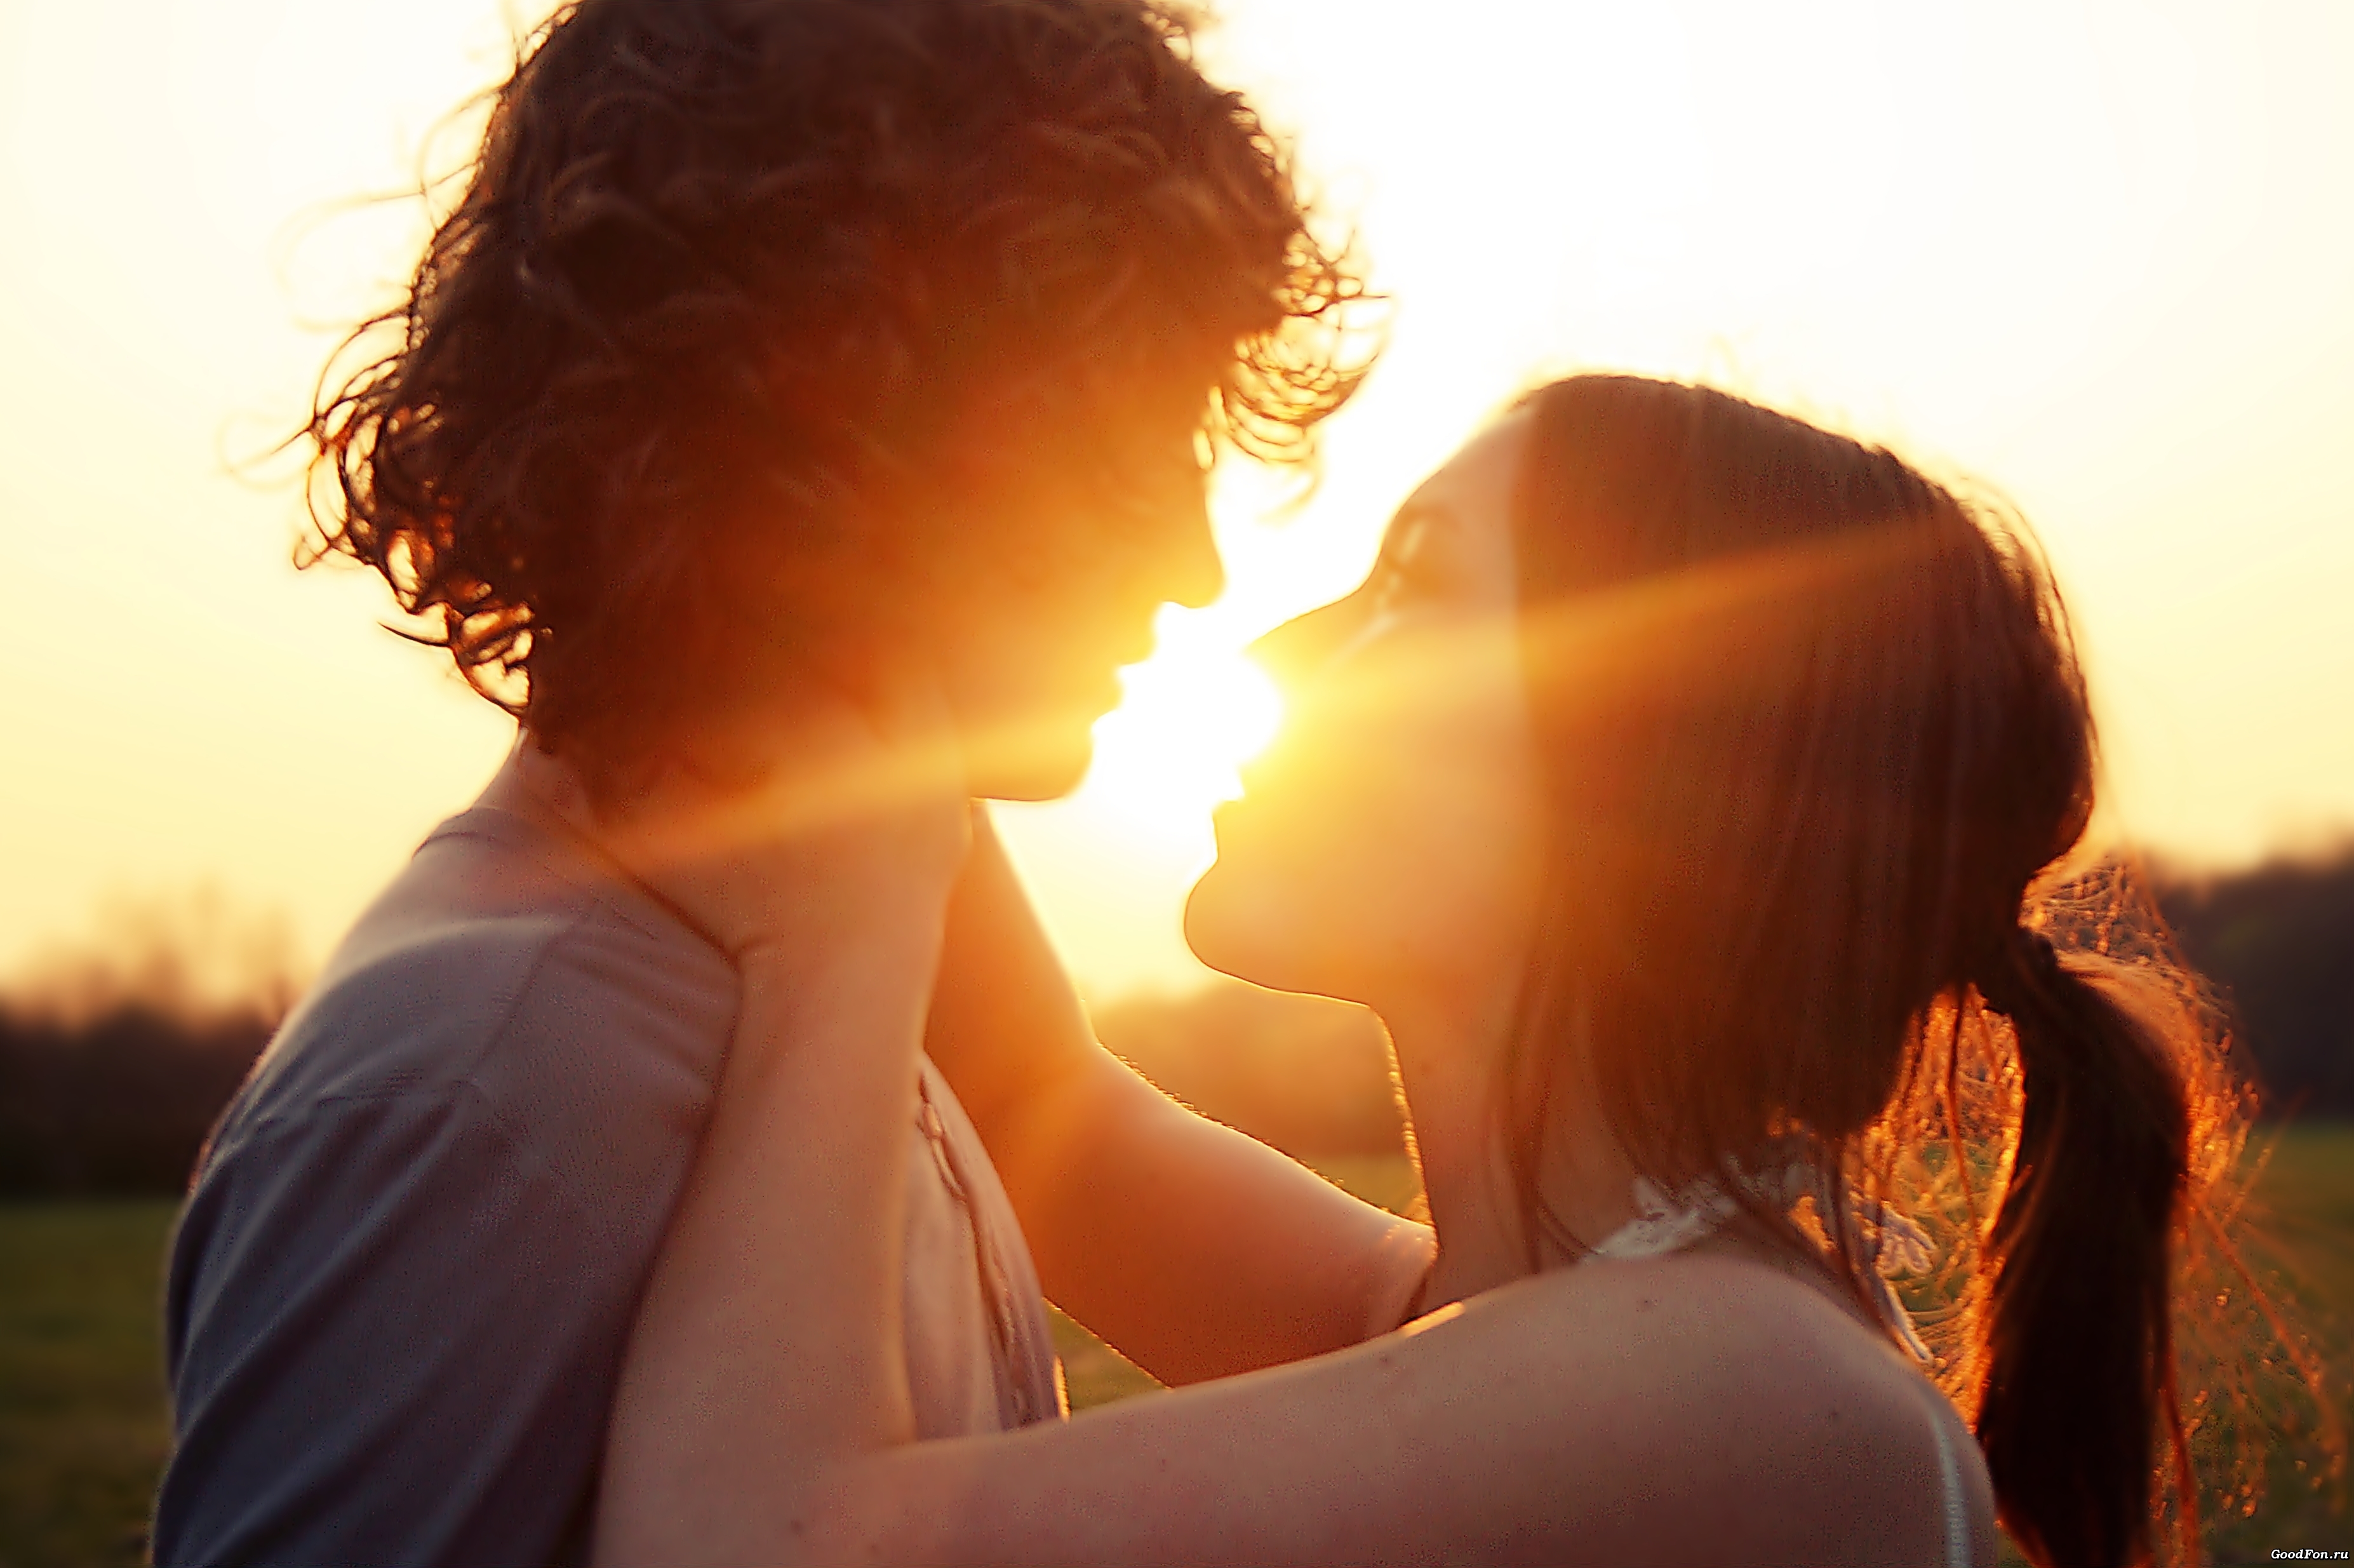 Обнять девушку поцеловать. Объятия влюбленных. Любовь и нежность. Романтичные картинки о любви. Влюбленная пара.